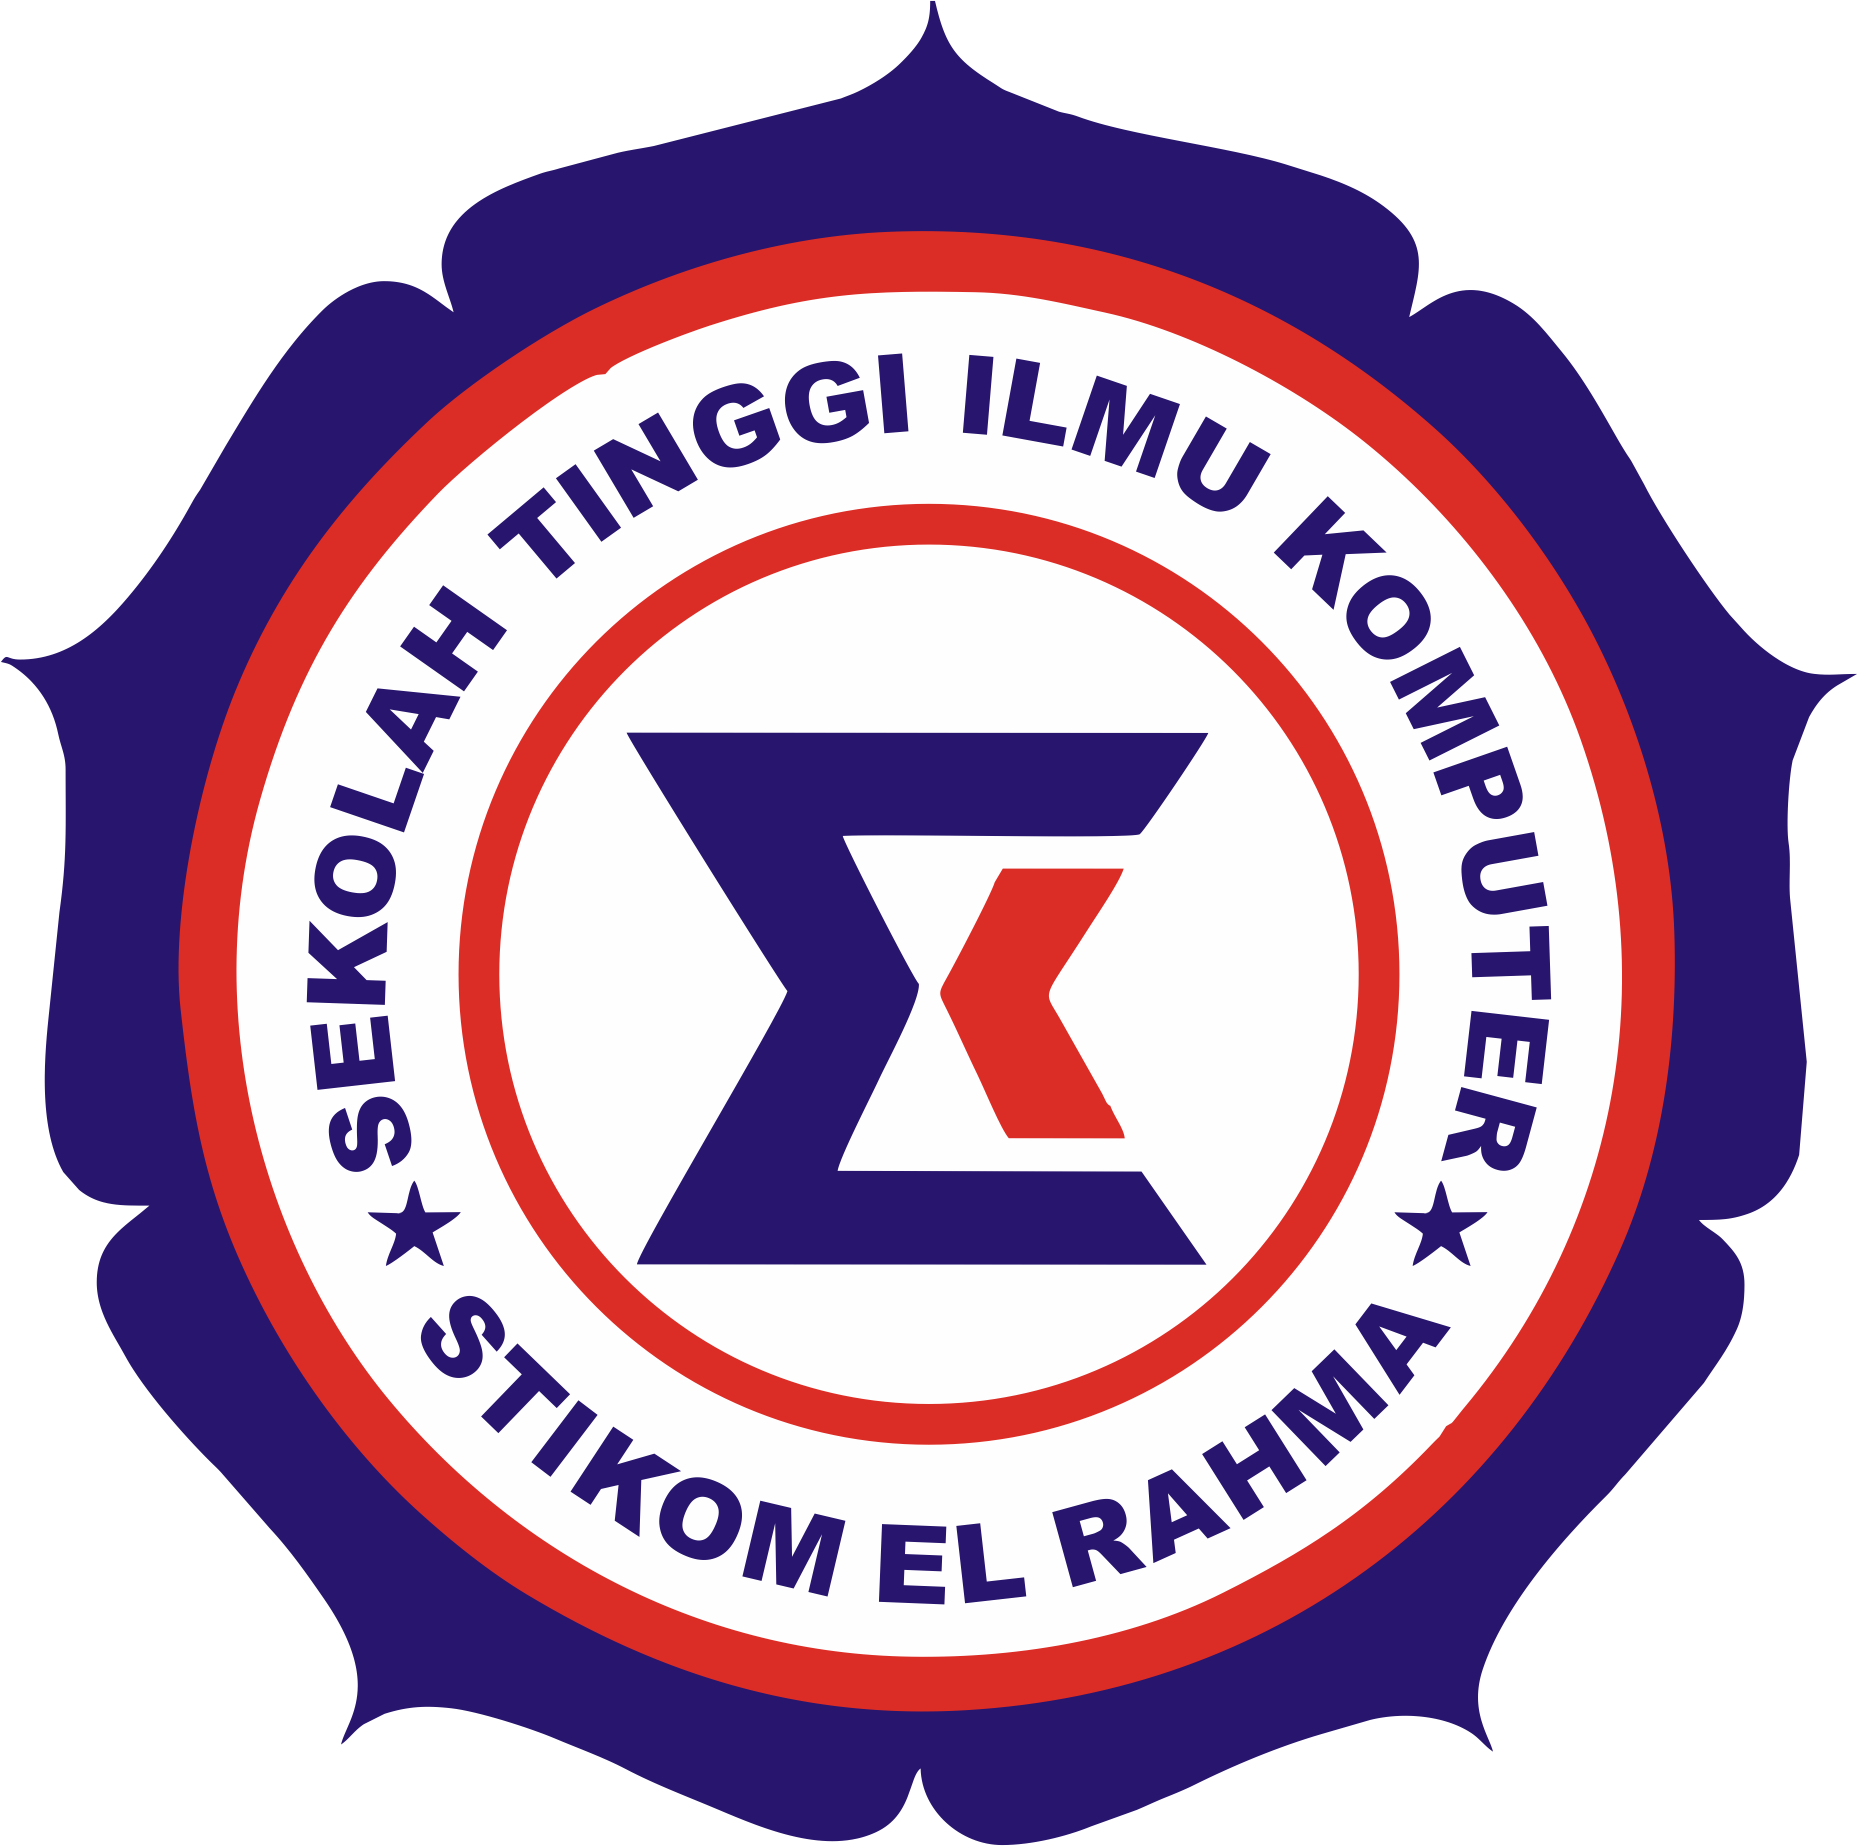 logo Sekolah Tinggi Ilmu Komputer El Rahma